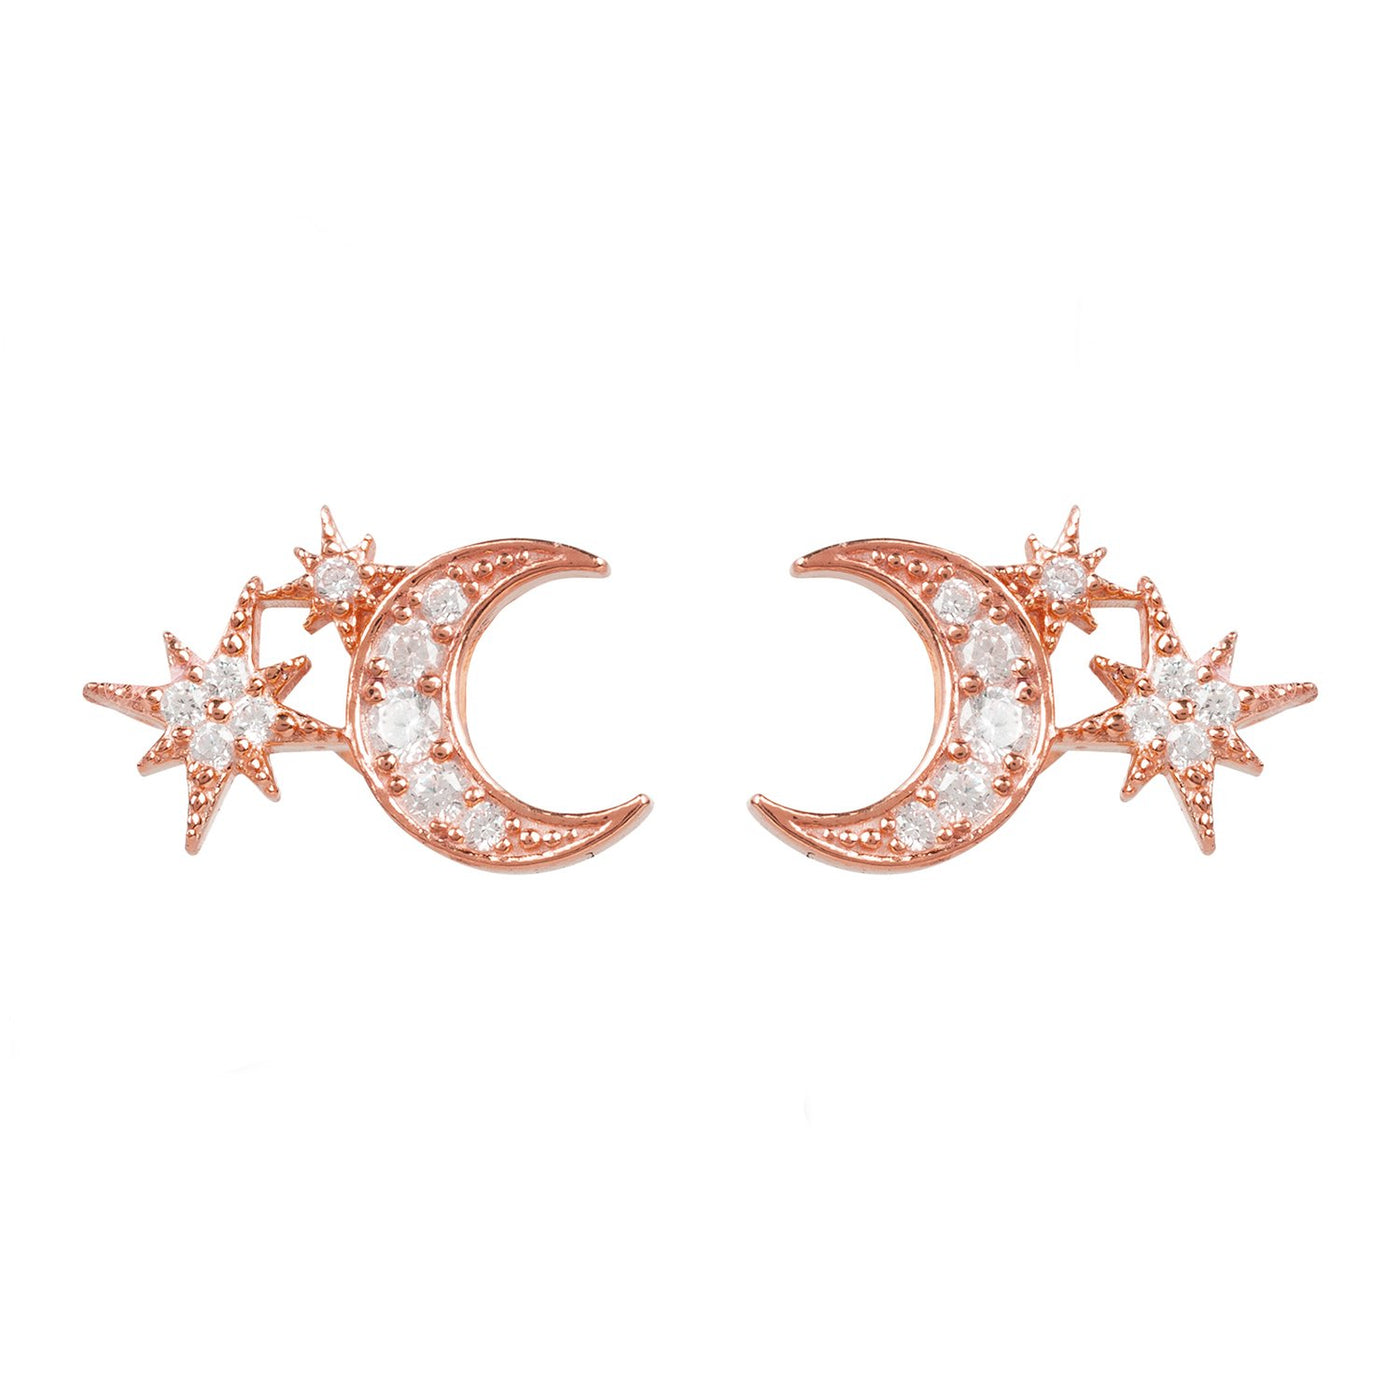 Pendientes - luna y estrellas - chapado en oro de 22 quilates (oro rosa) - circonitas